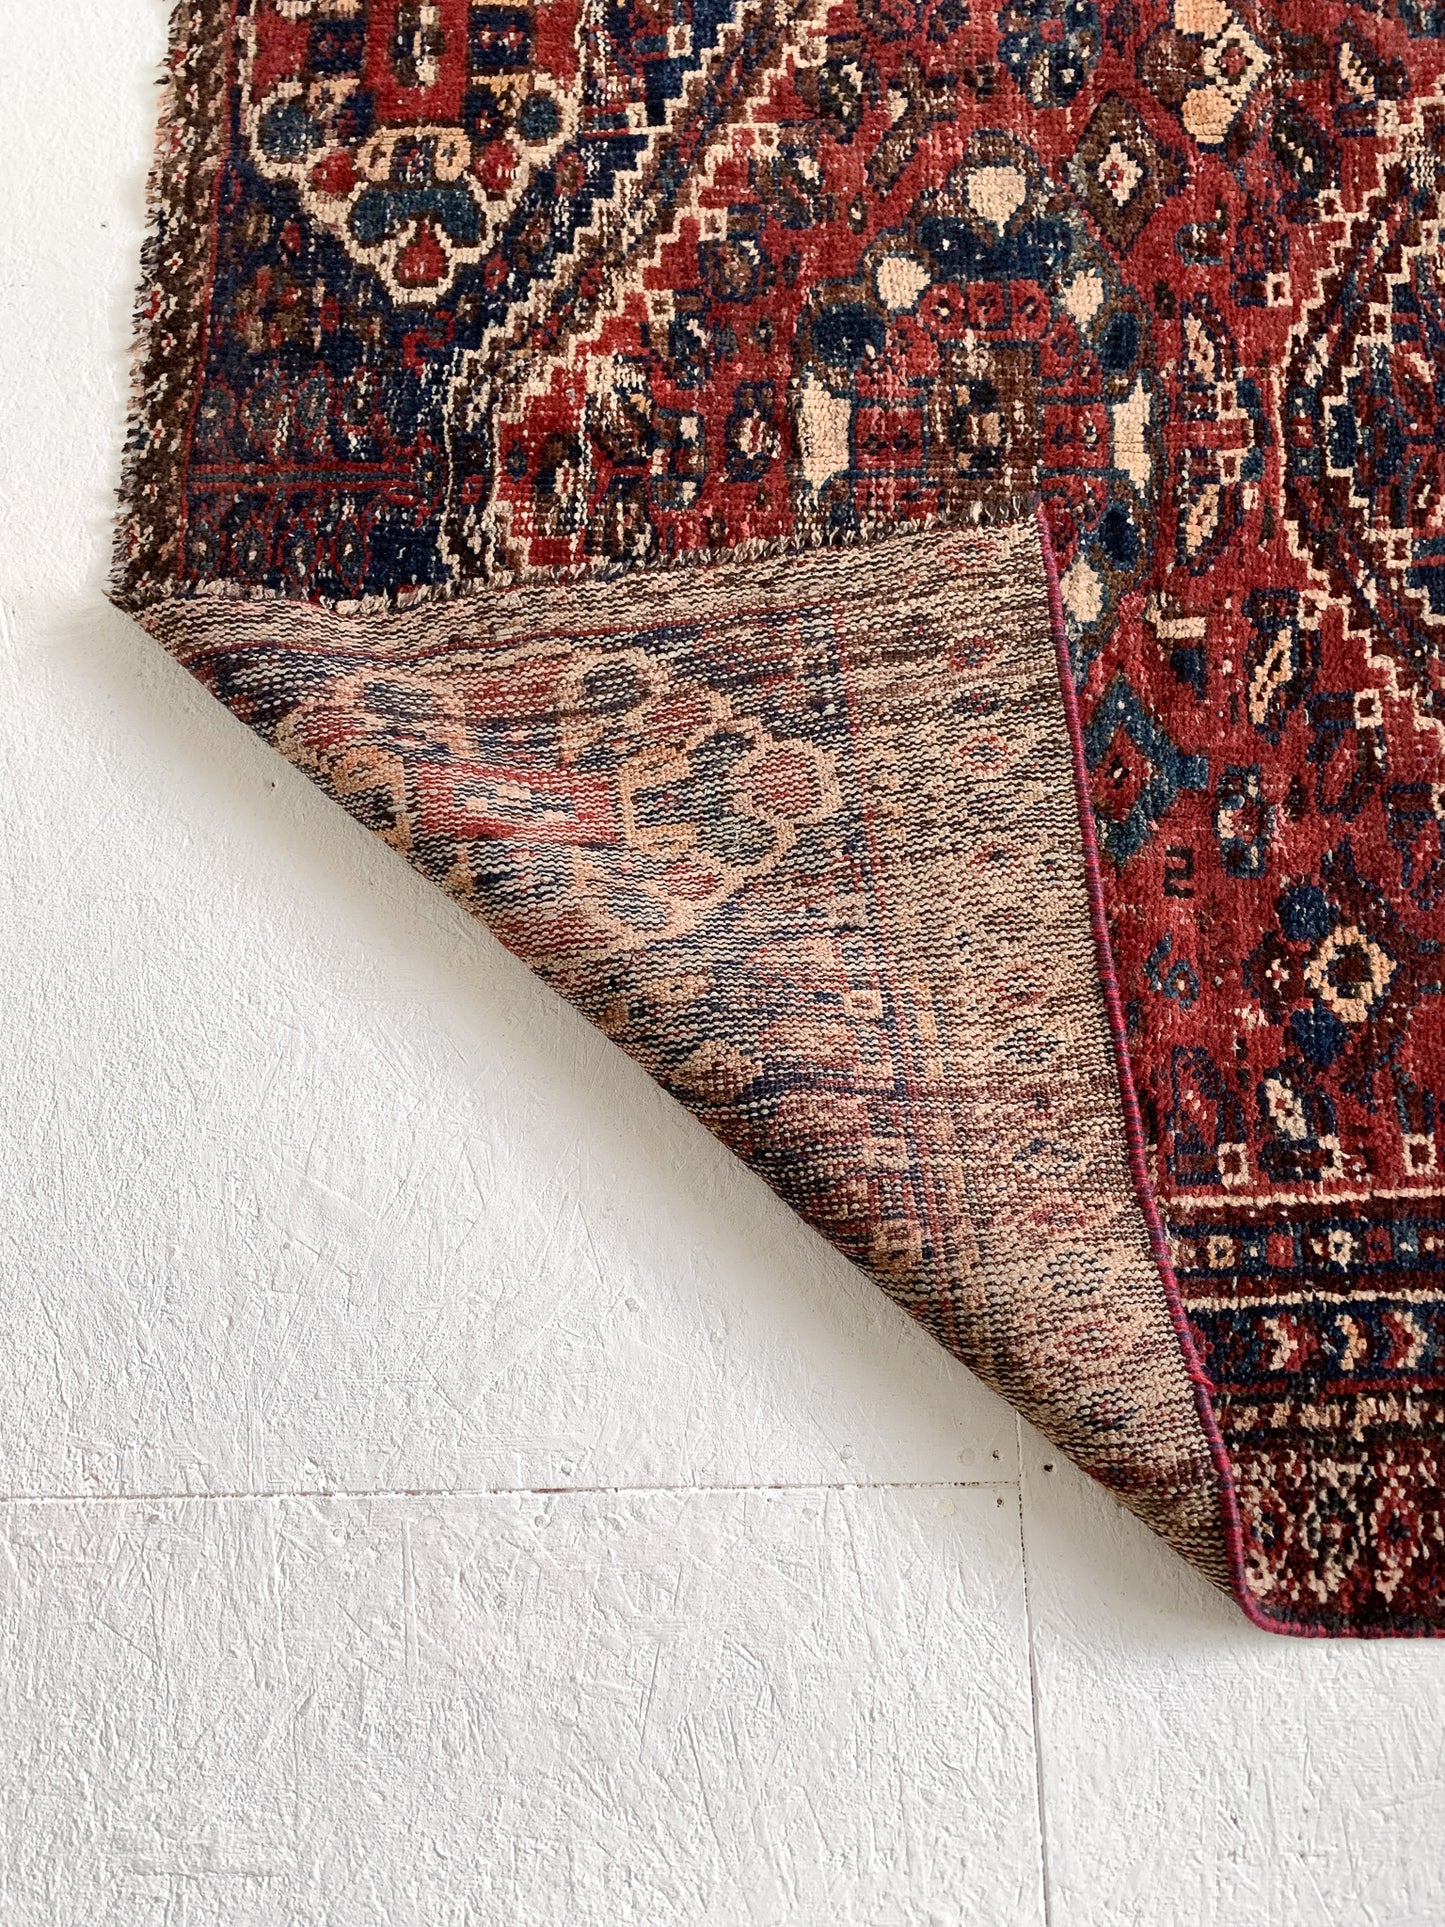 A1122 - 4.5' x 6.1' Vintage Persian Shiraz Area Rug